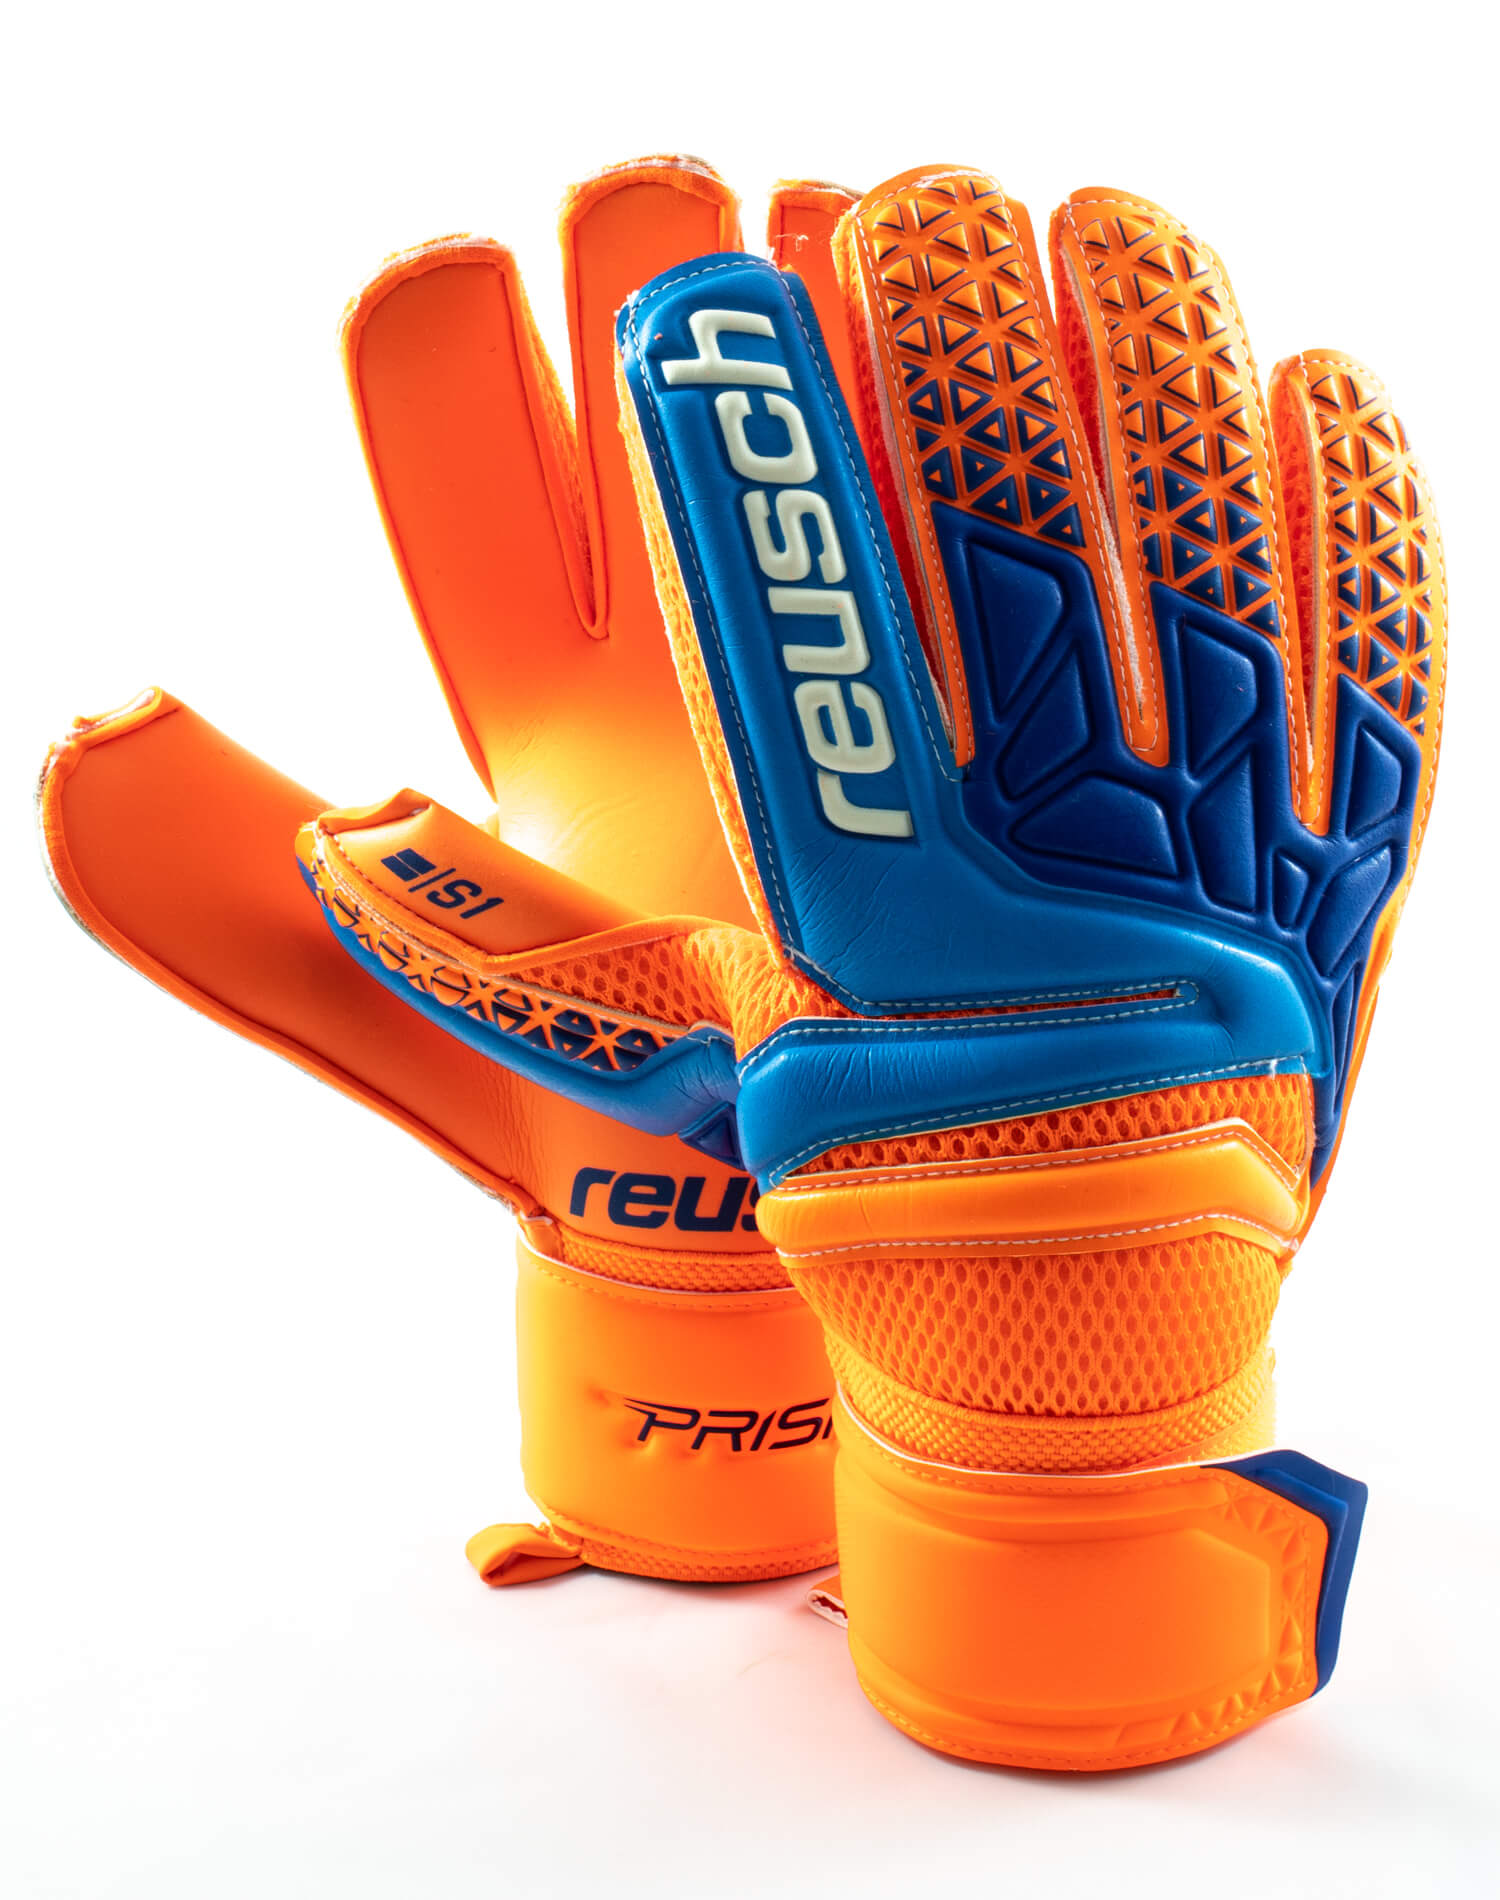 Correctamente Anuncio Conveniente Guantes Reusch Prisma Prime S1 Naranja - Azul - Golero Sport